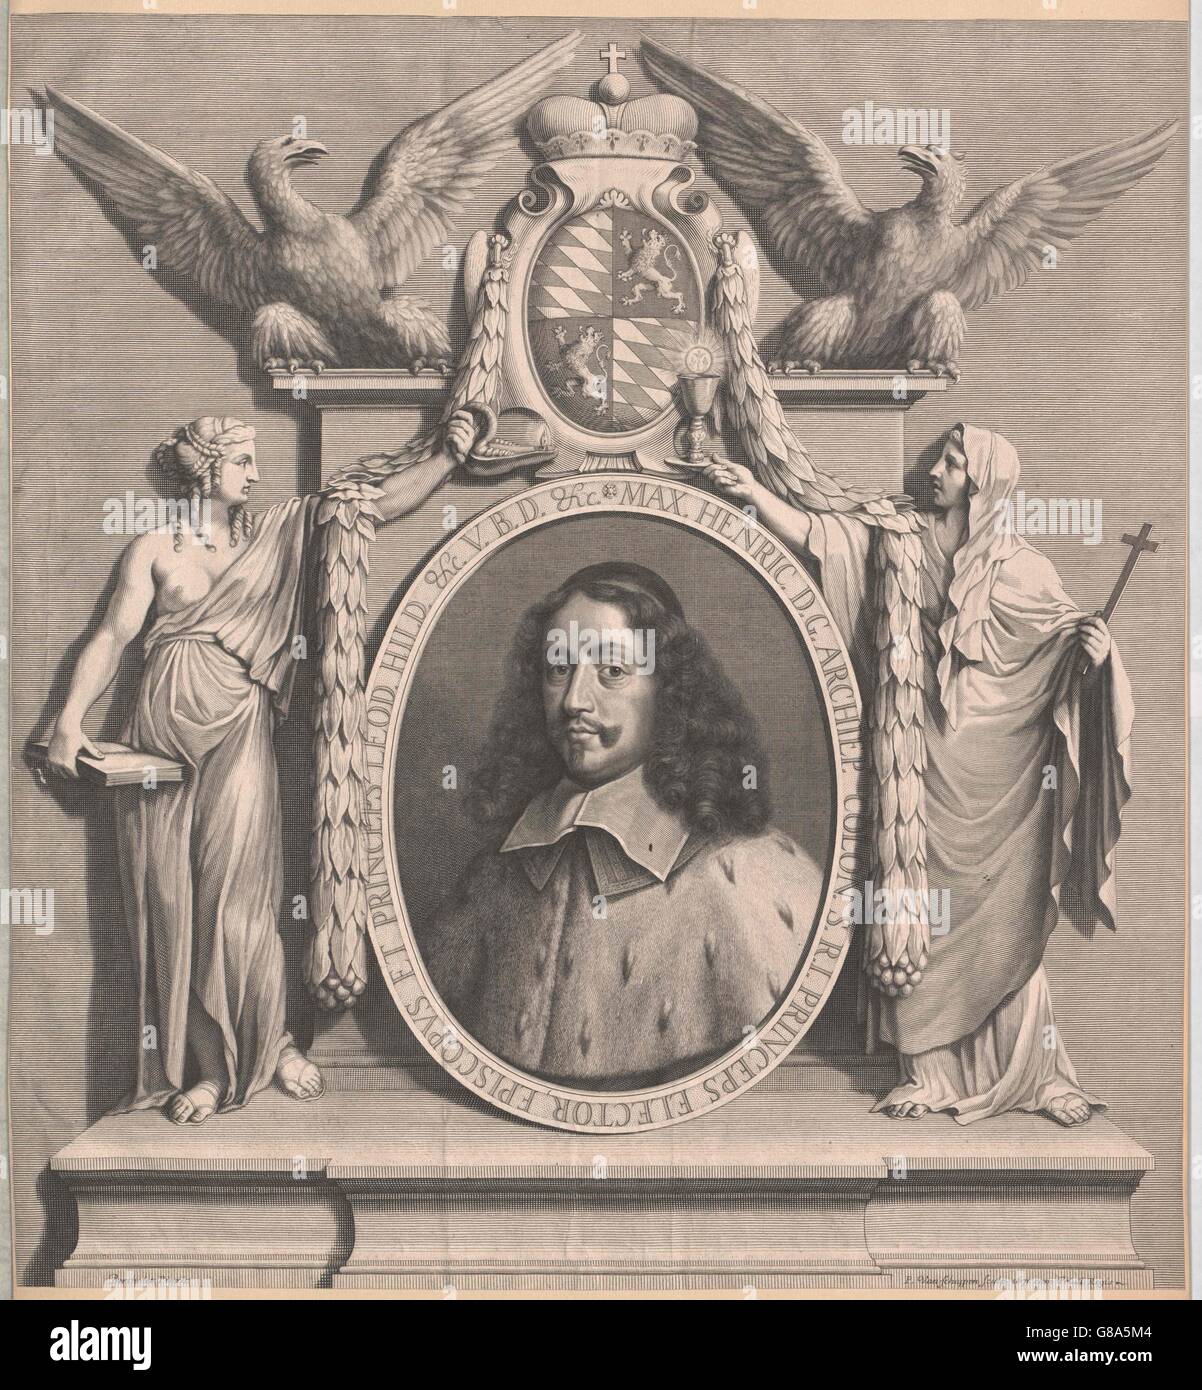 Massimiliano Heinrich, Herzog von Bayern, Kurfürst von Köln Foto Stock